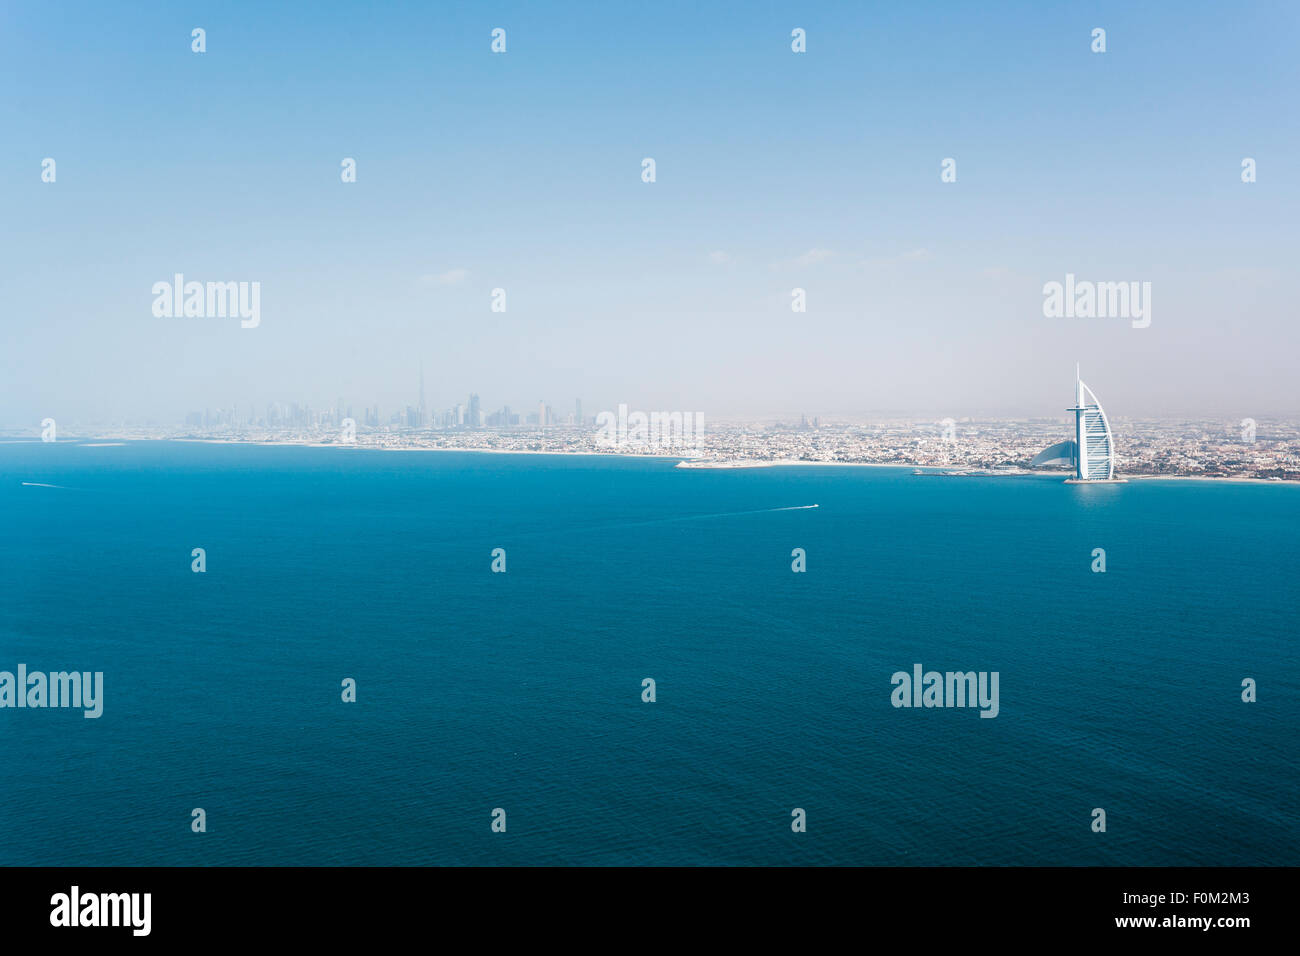 Coast with Burj Al Arab, Dubai, UAE Stock Photo